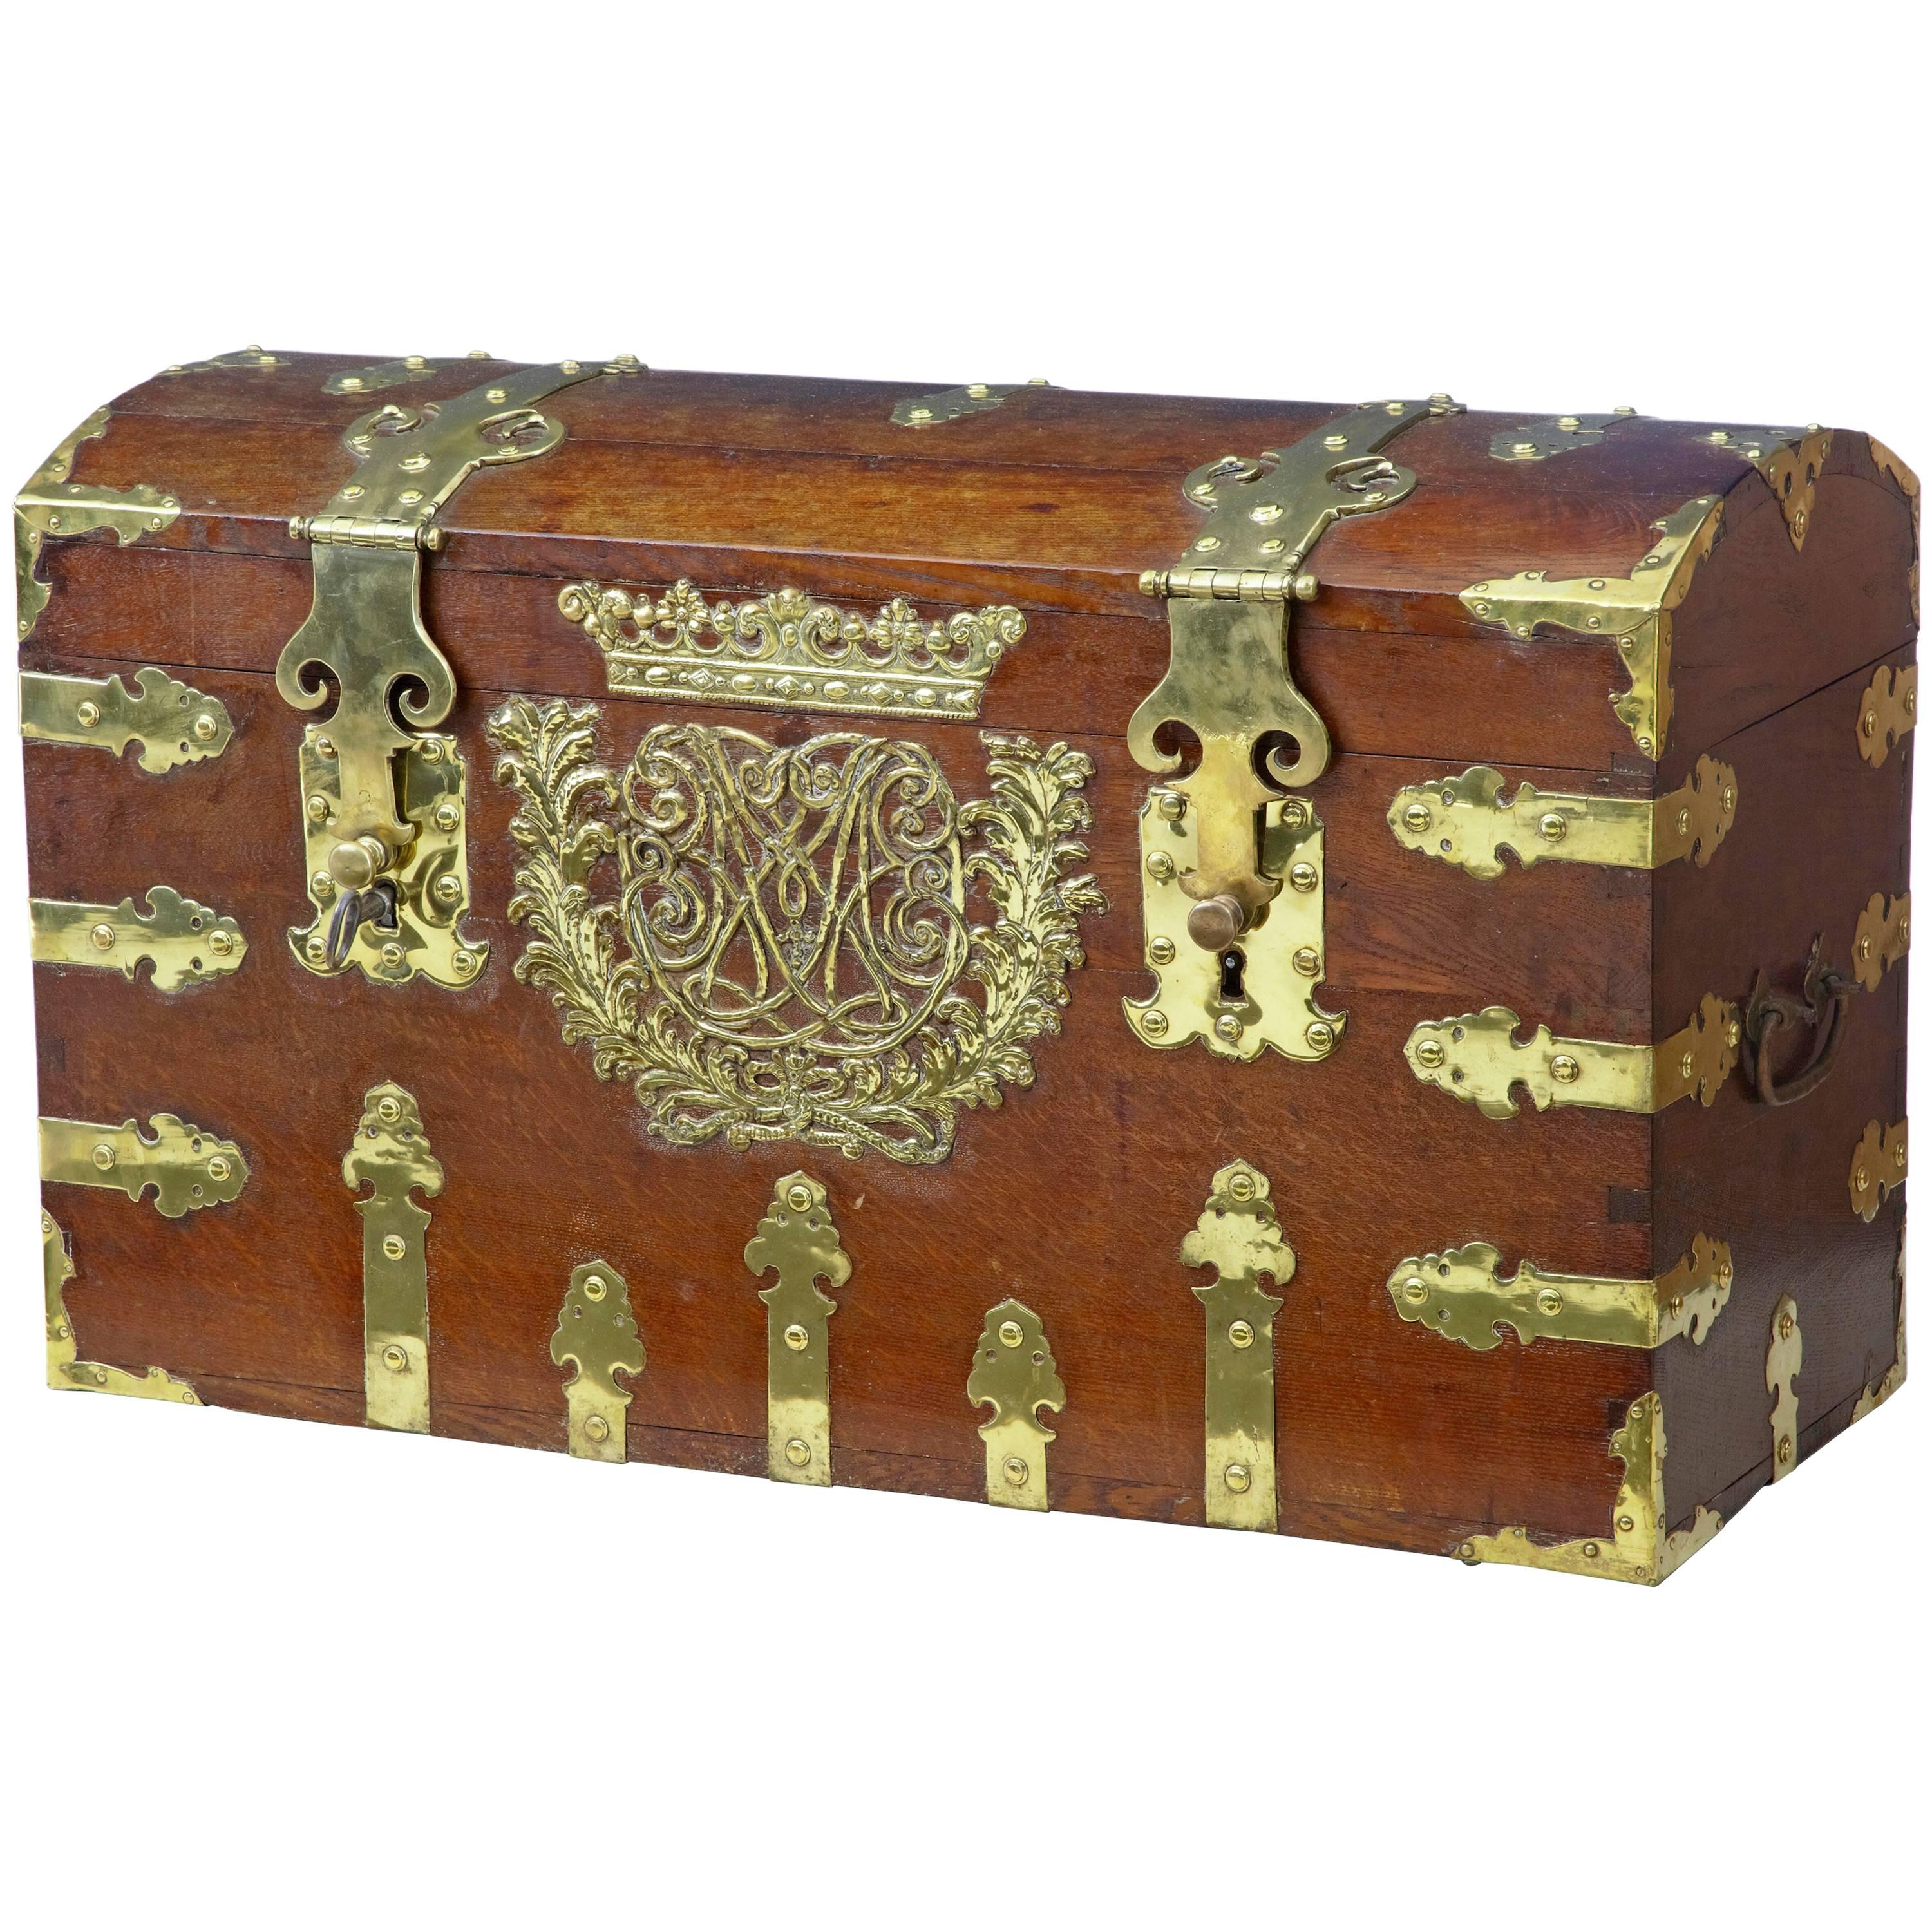 Rare 18th Century Oak and Brass Silk Road Coffer Box